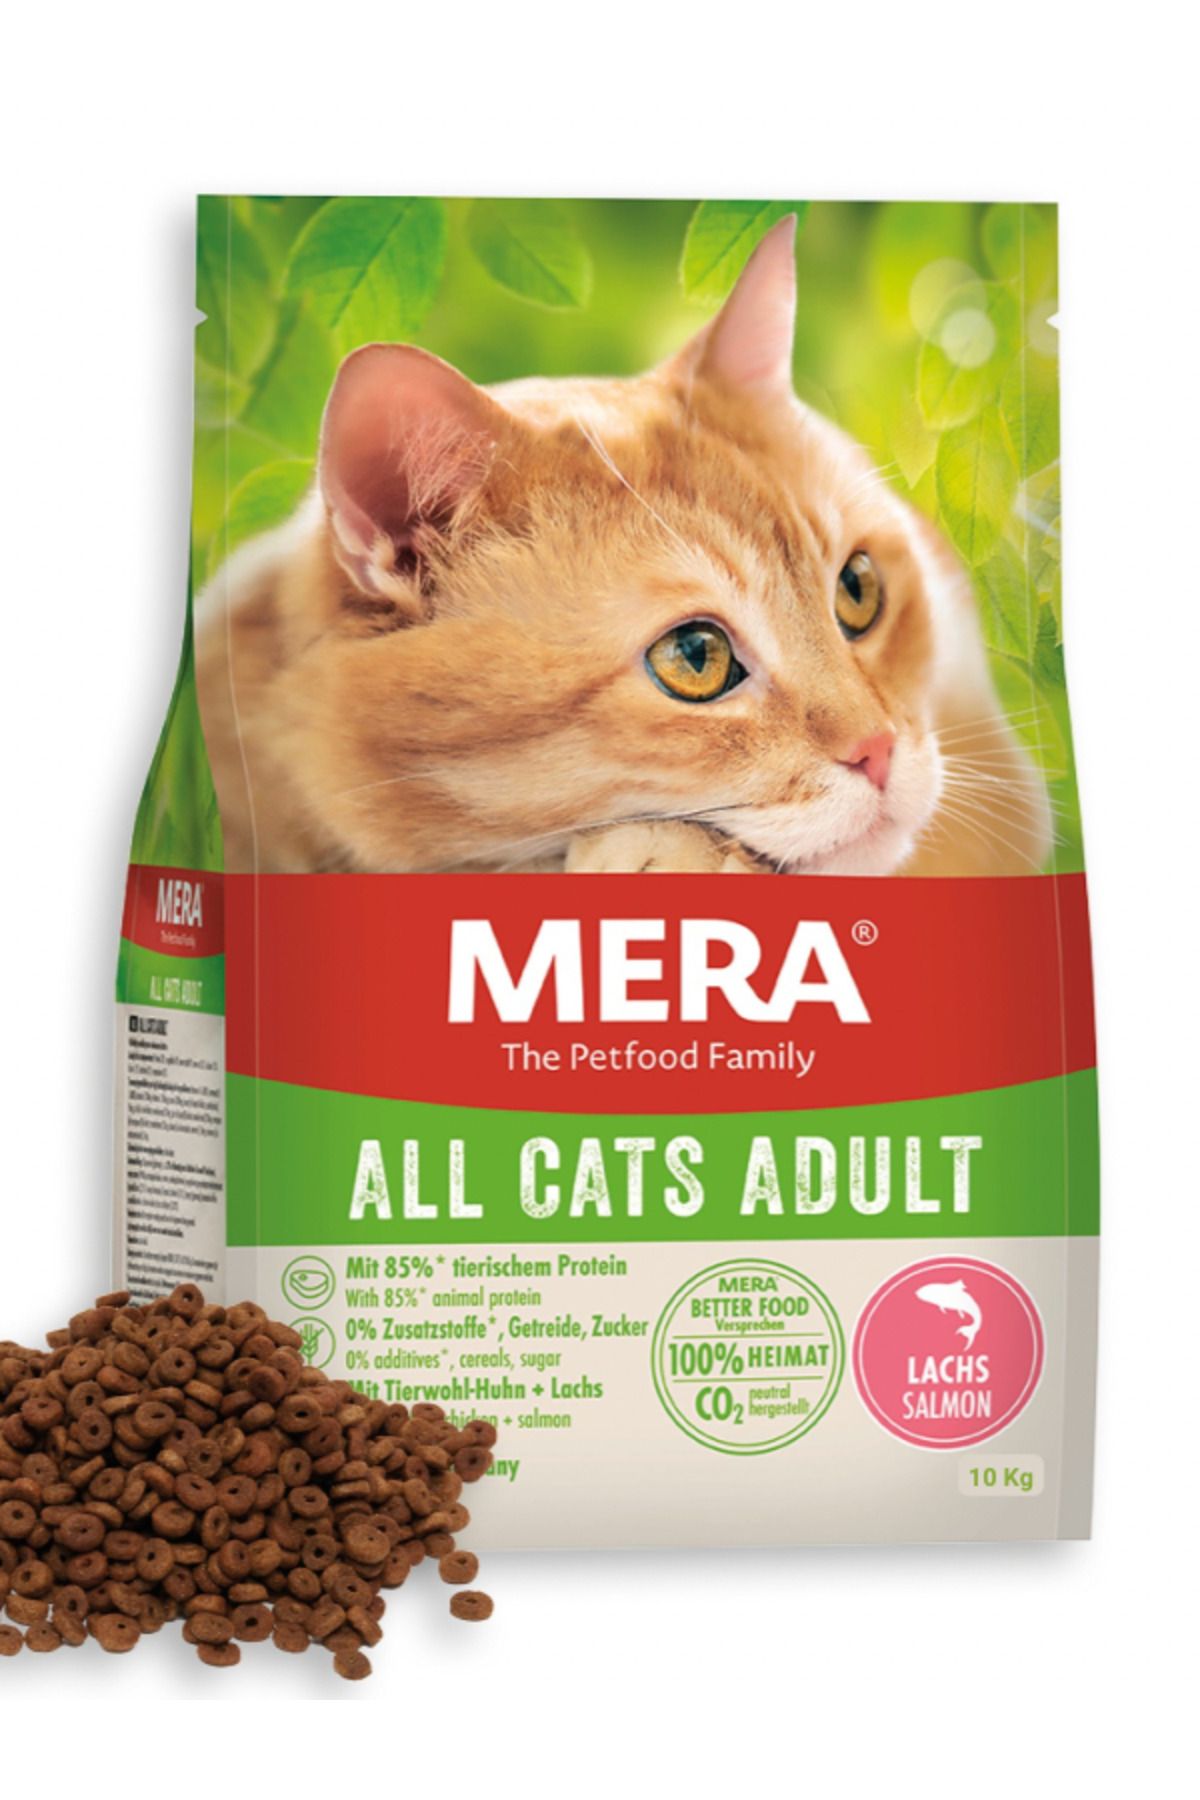 Mera All Cats Adult Grain Free Salmon Tüm Kediler İçin Tahılsız Taze Somon Balıklı Kedi Maması 10 kg